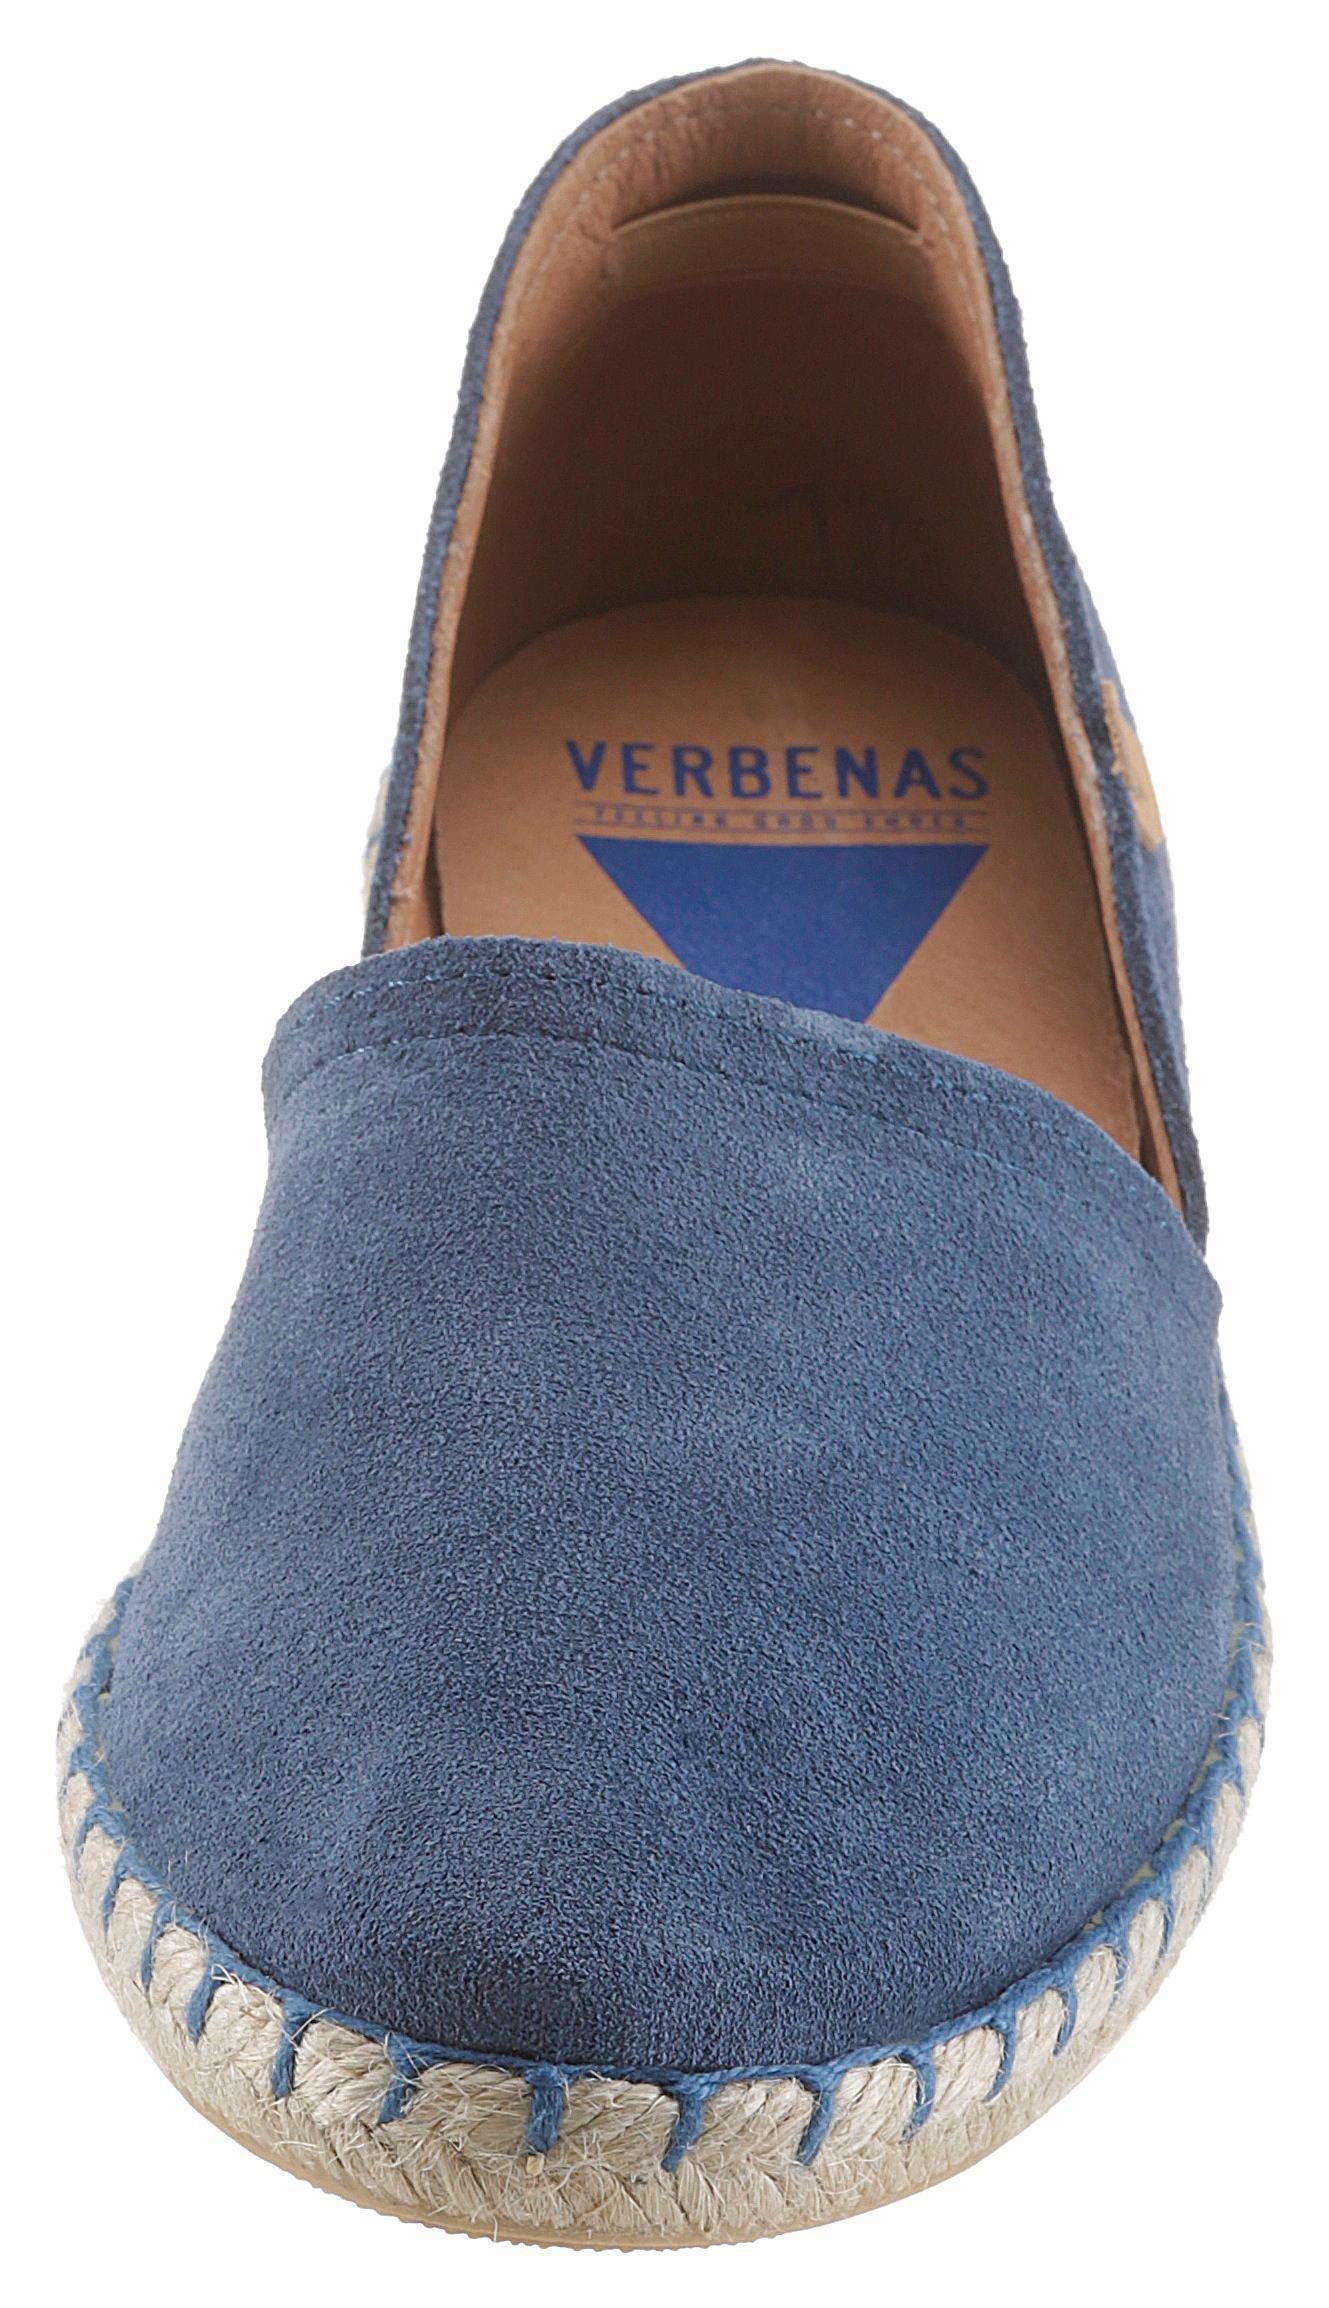 VERBENAS Espadrille mit typischem Jute-Rahmen jeansblau